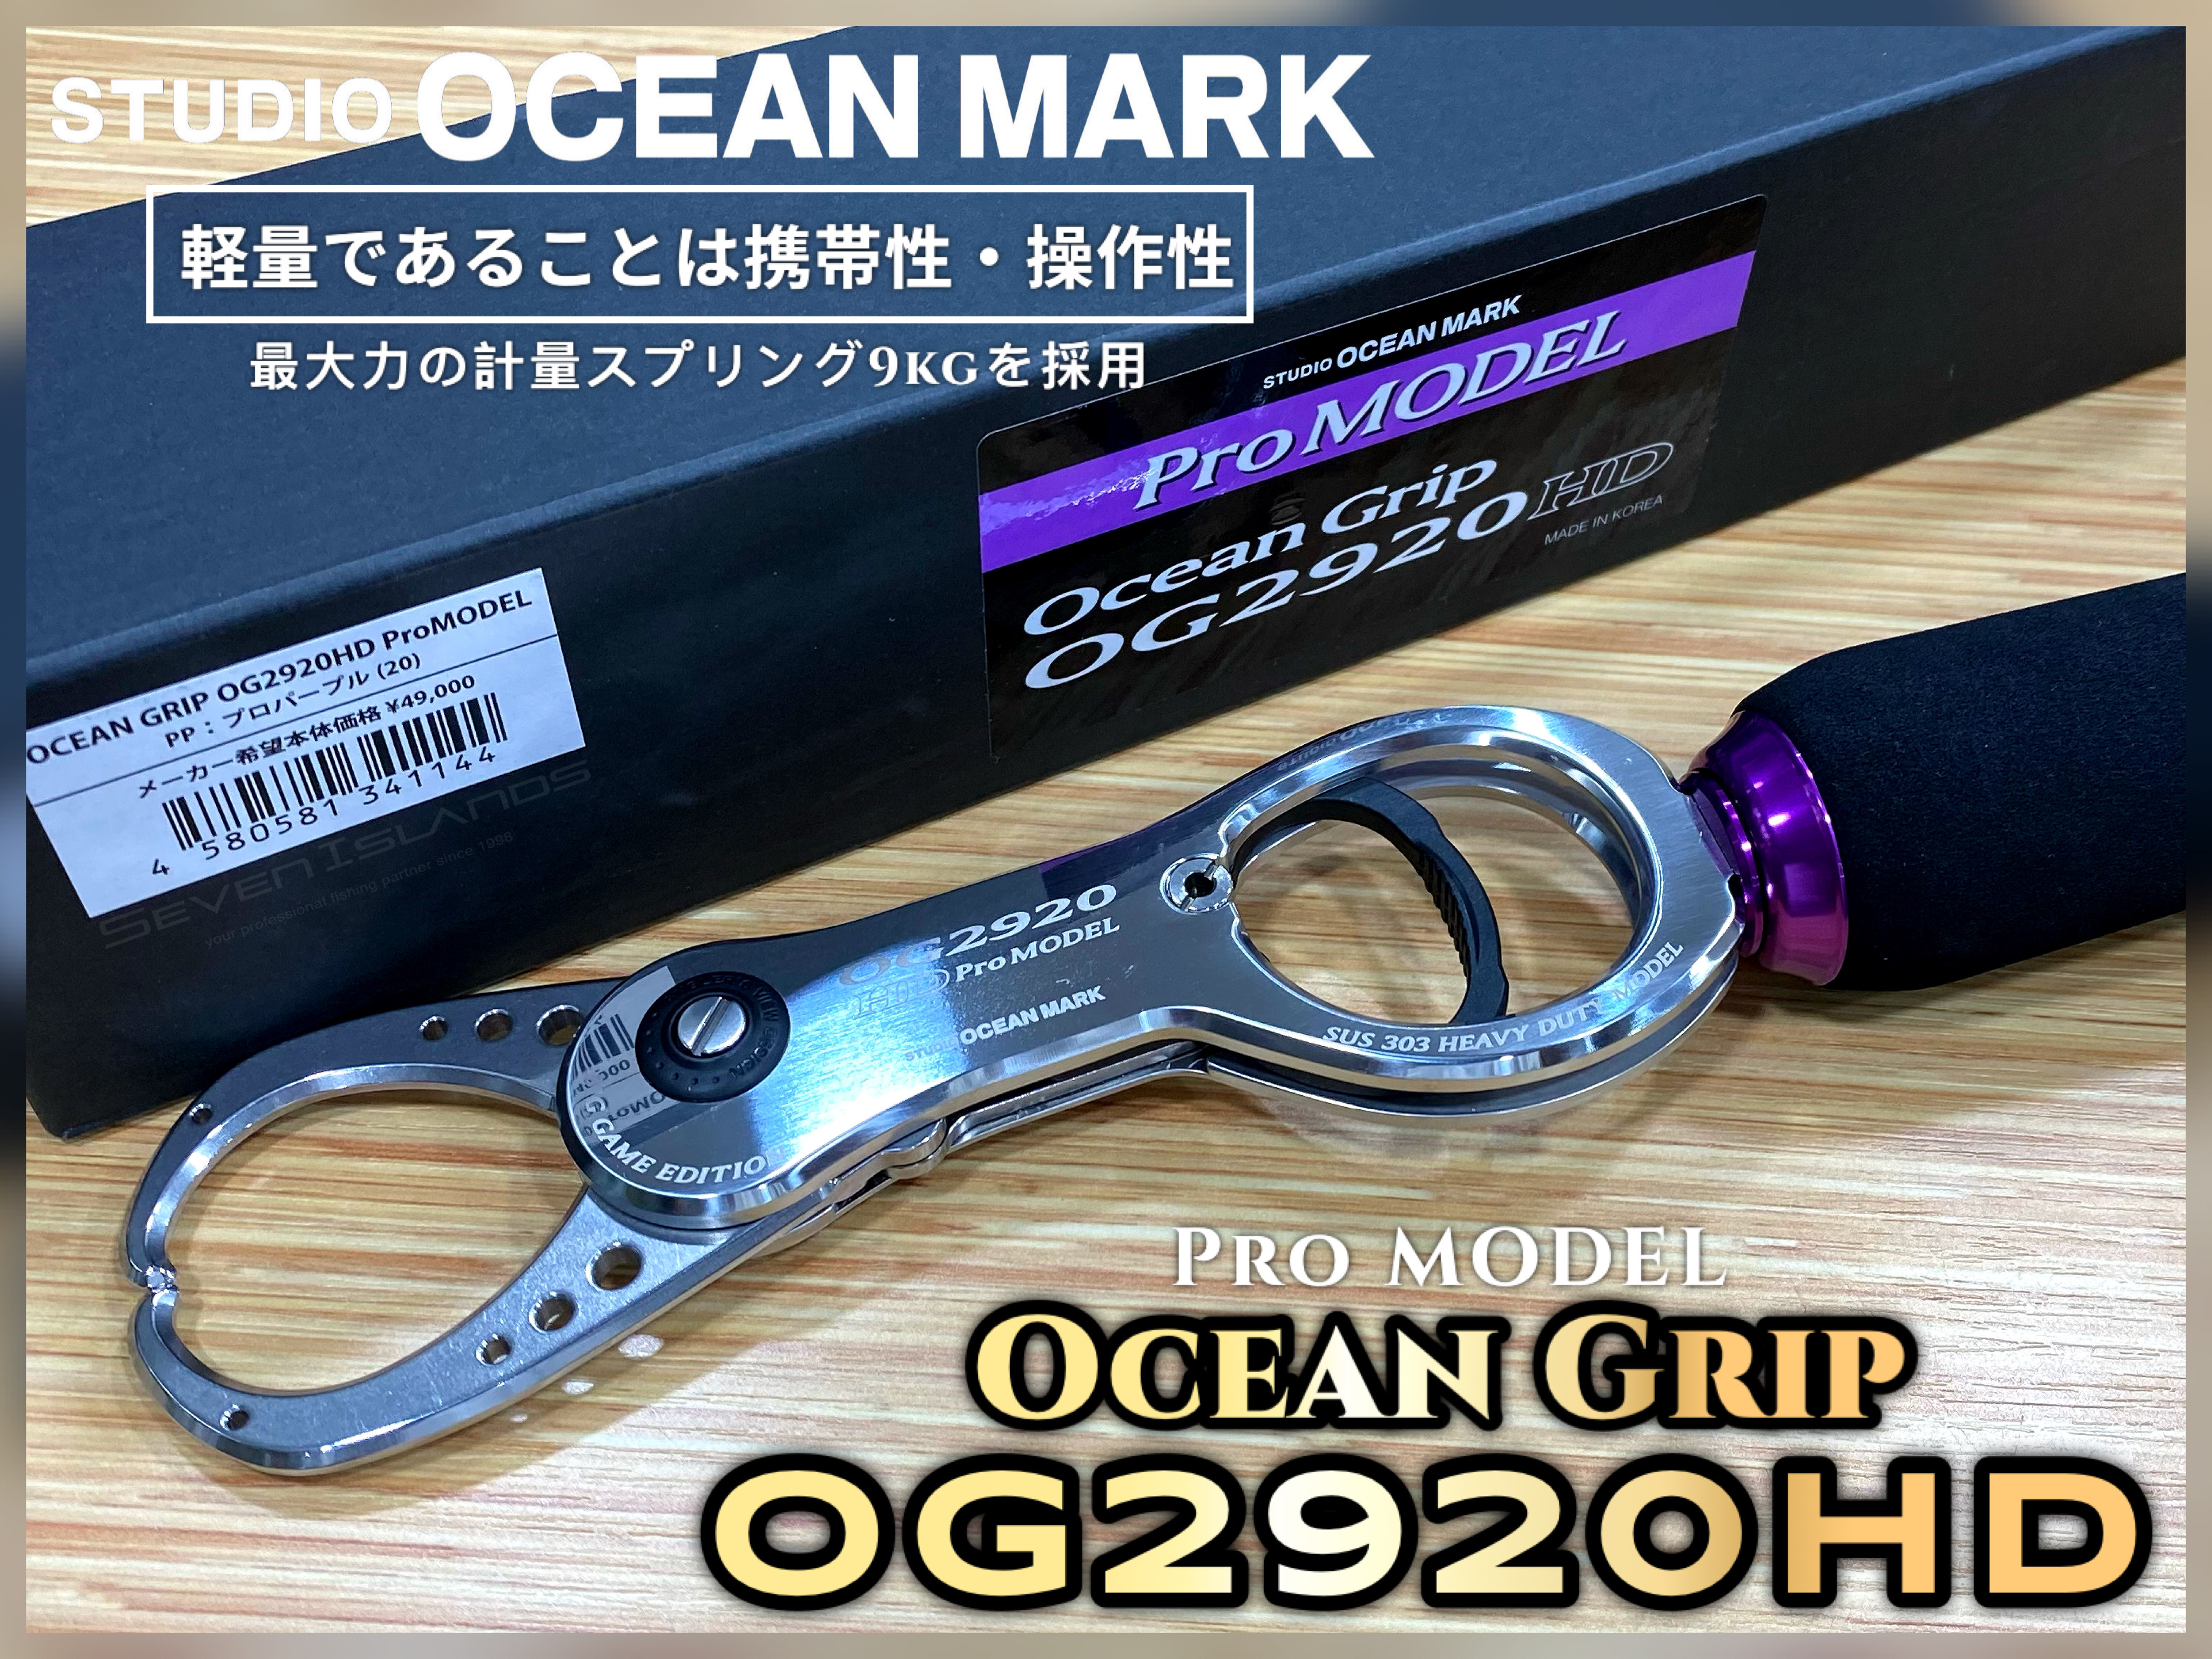 Studio OCEAN MARK Ocean Grip OG2920HD Pro MODEL